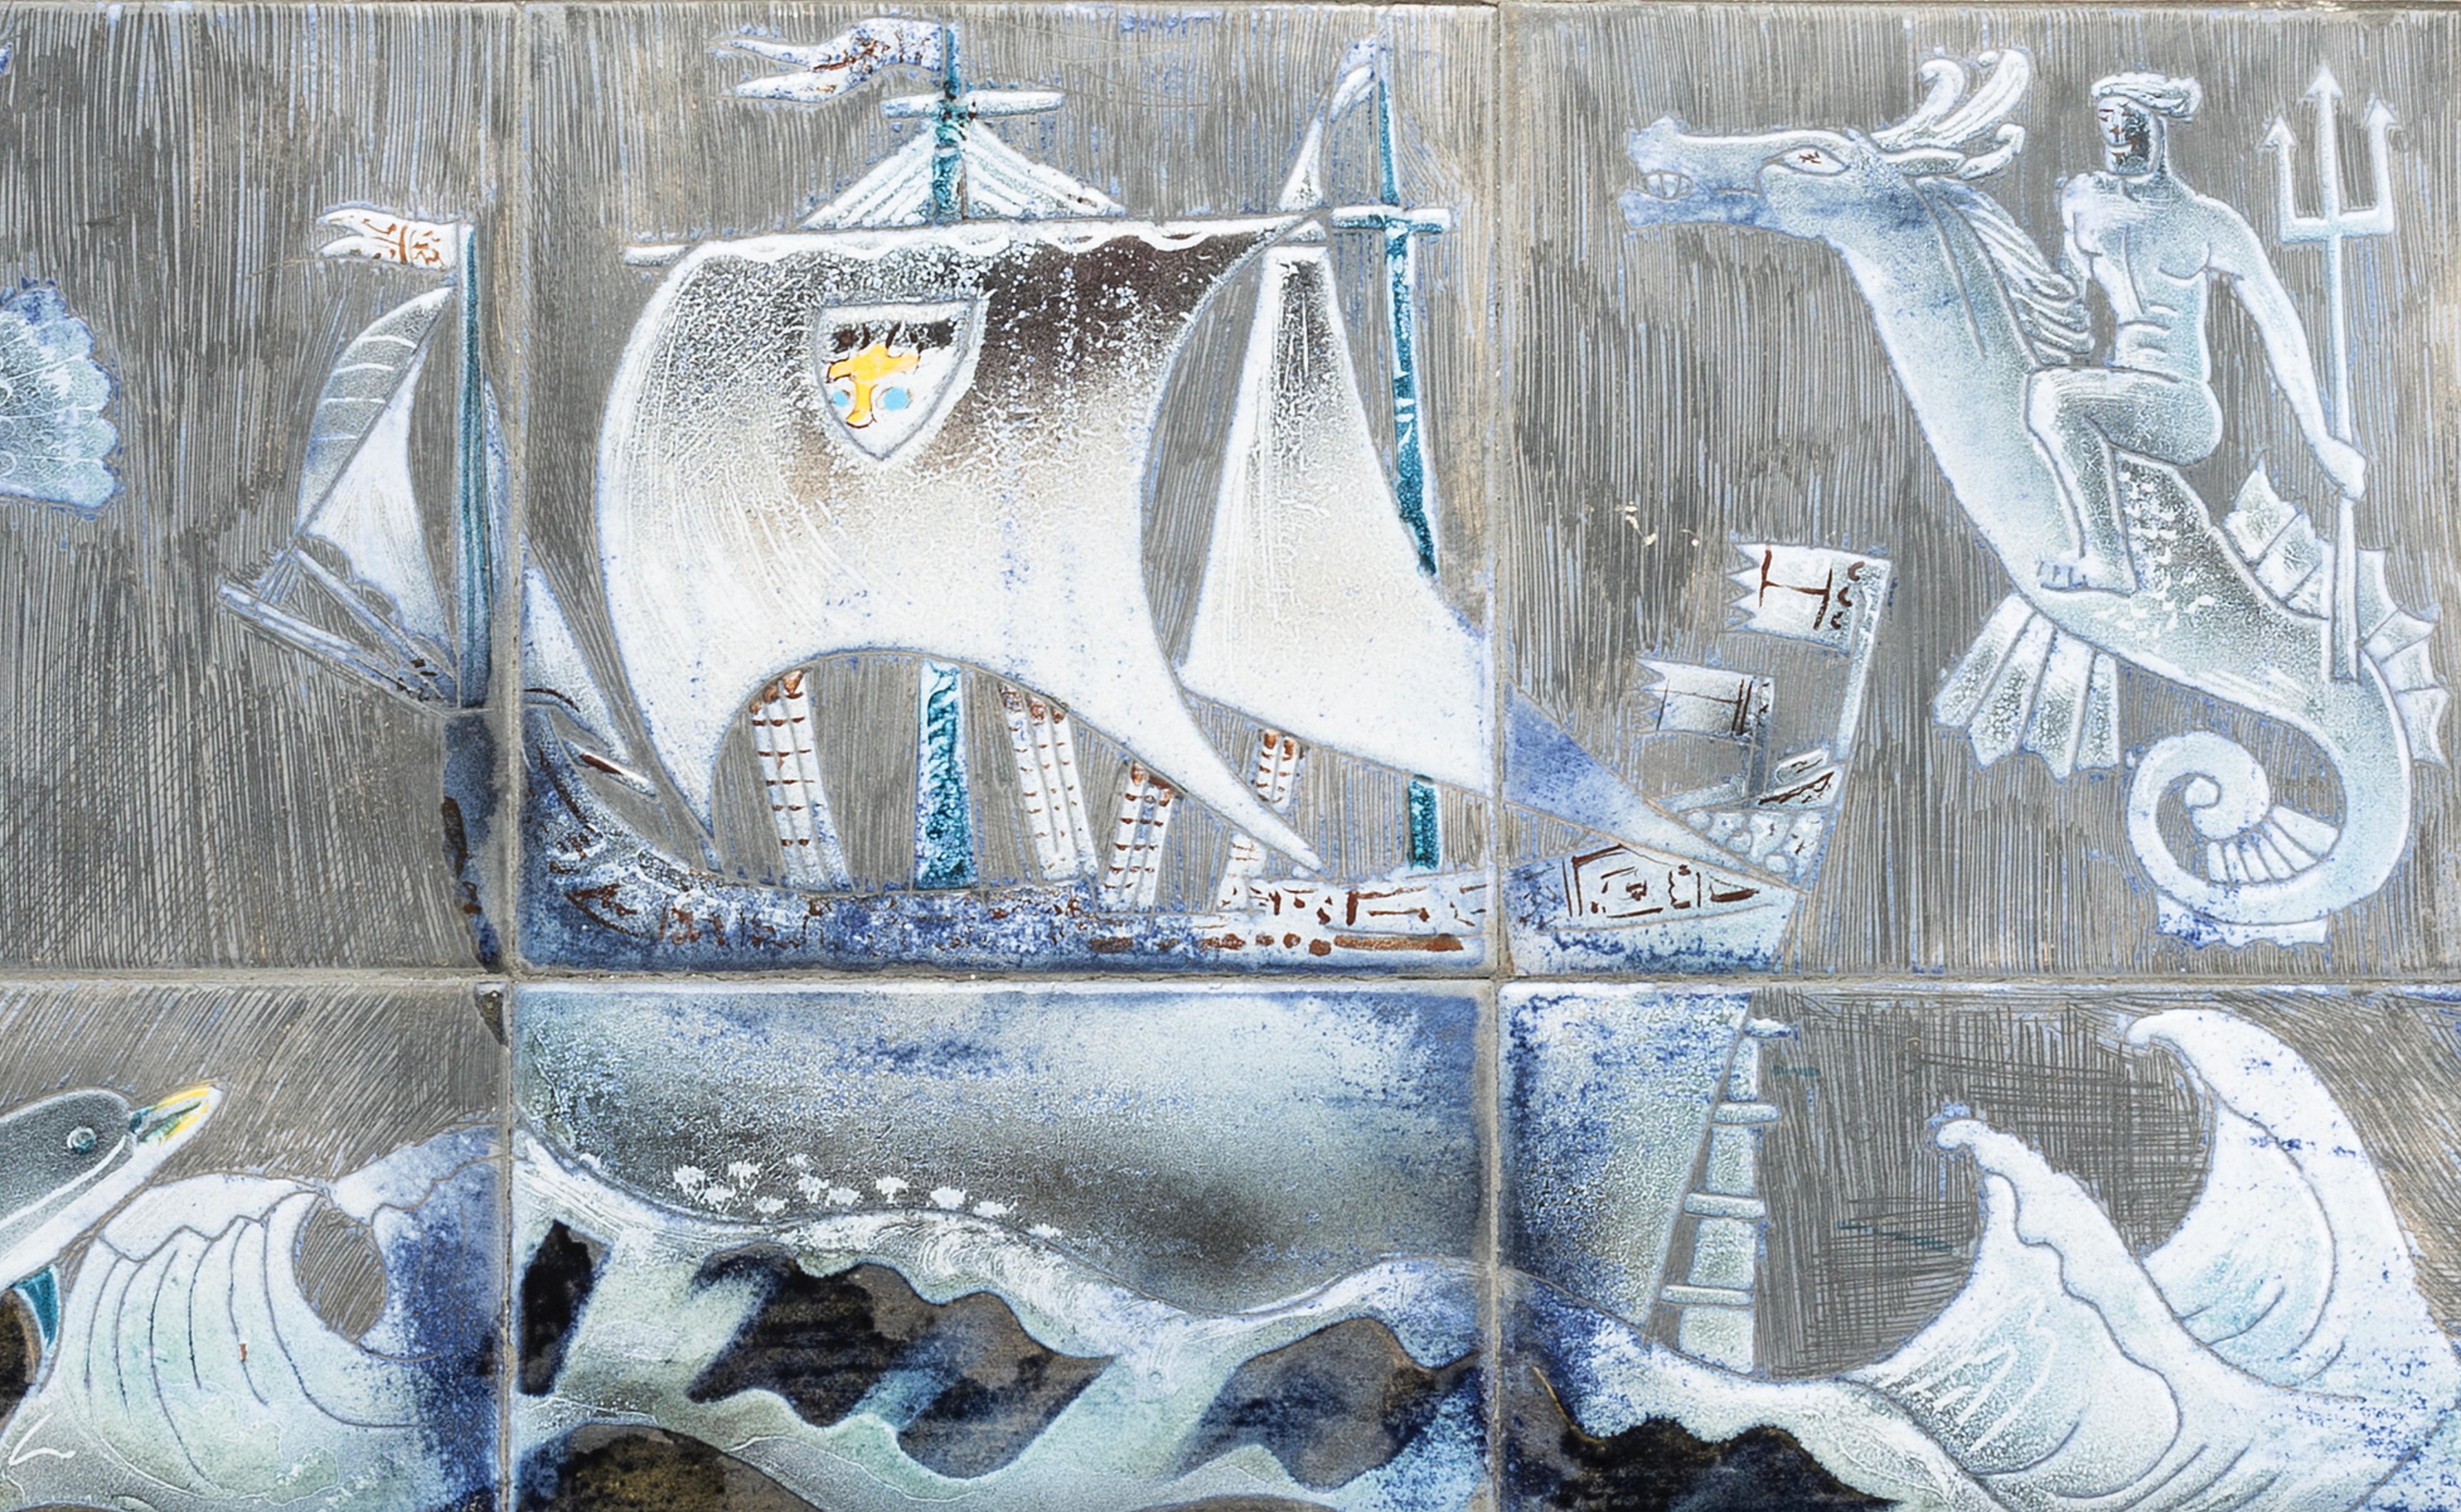 Keramischer Wandteller von Marian Zawadski für Tilgmans Sweden 1968
Einzigartige Keramikfliesen und gemalt von der Künstlerin, die ein Boot mit Meeresgott und Tieren auf Metall montiert darstellt.
Dieses Originalwerk ist vom Künstler signiert und